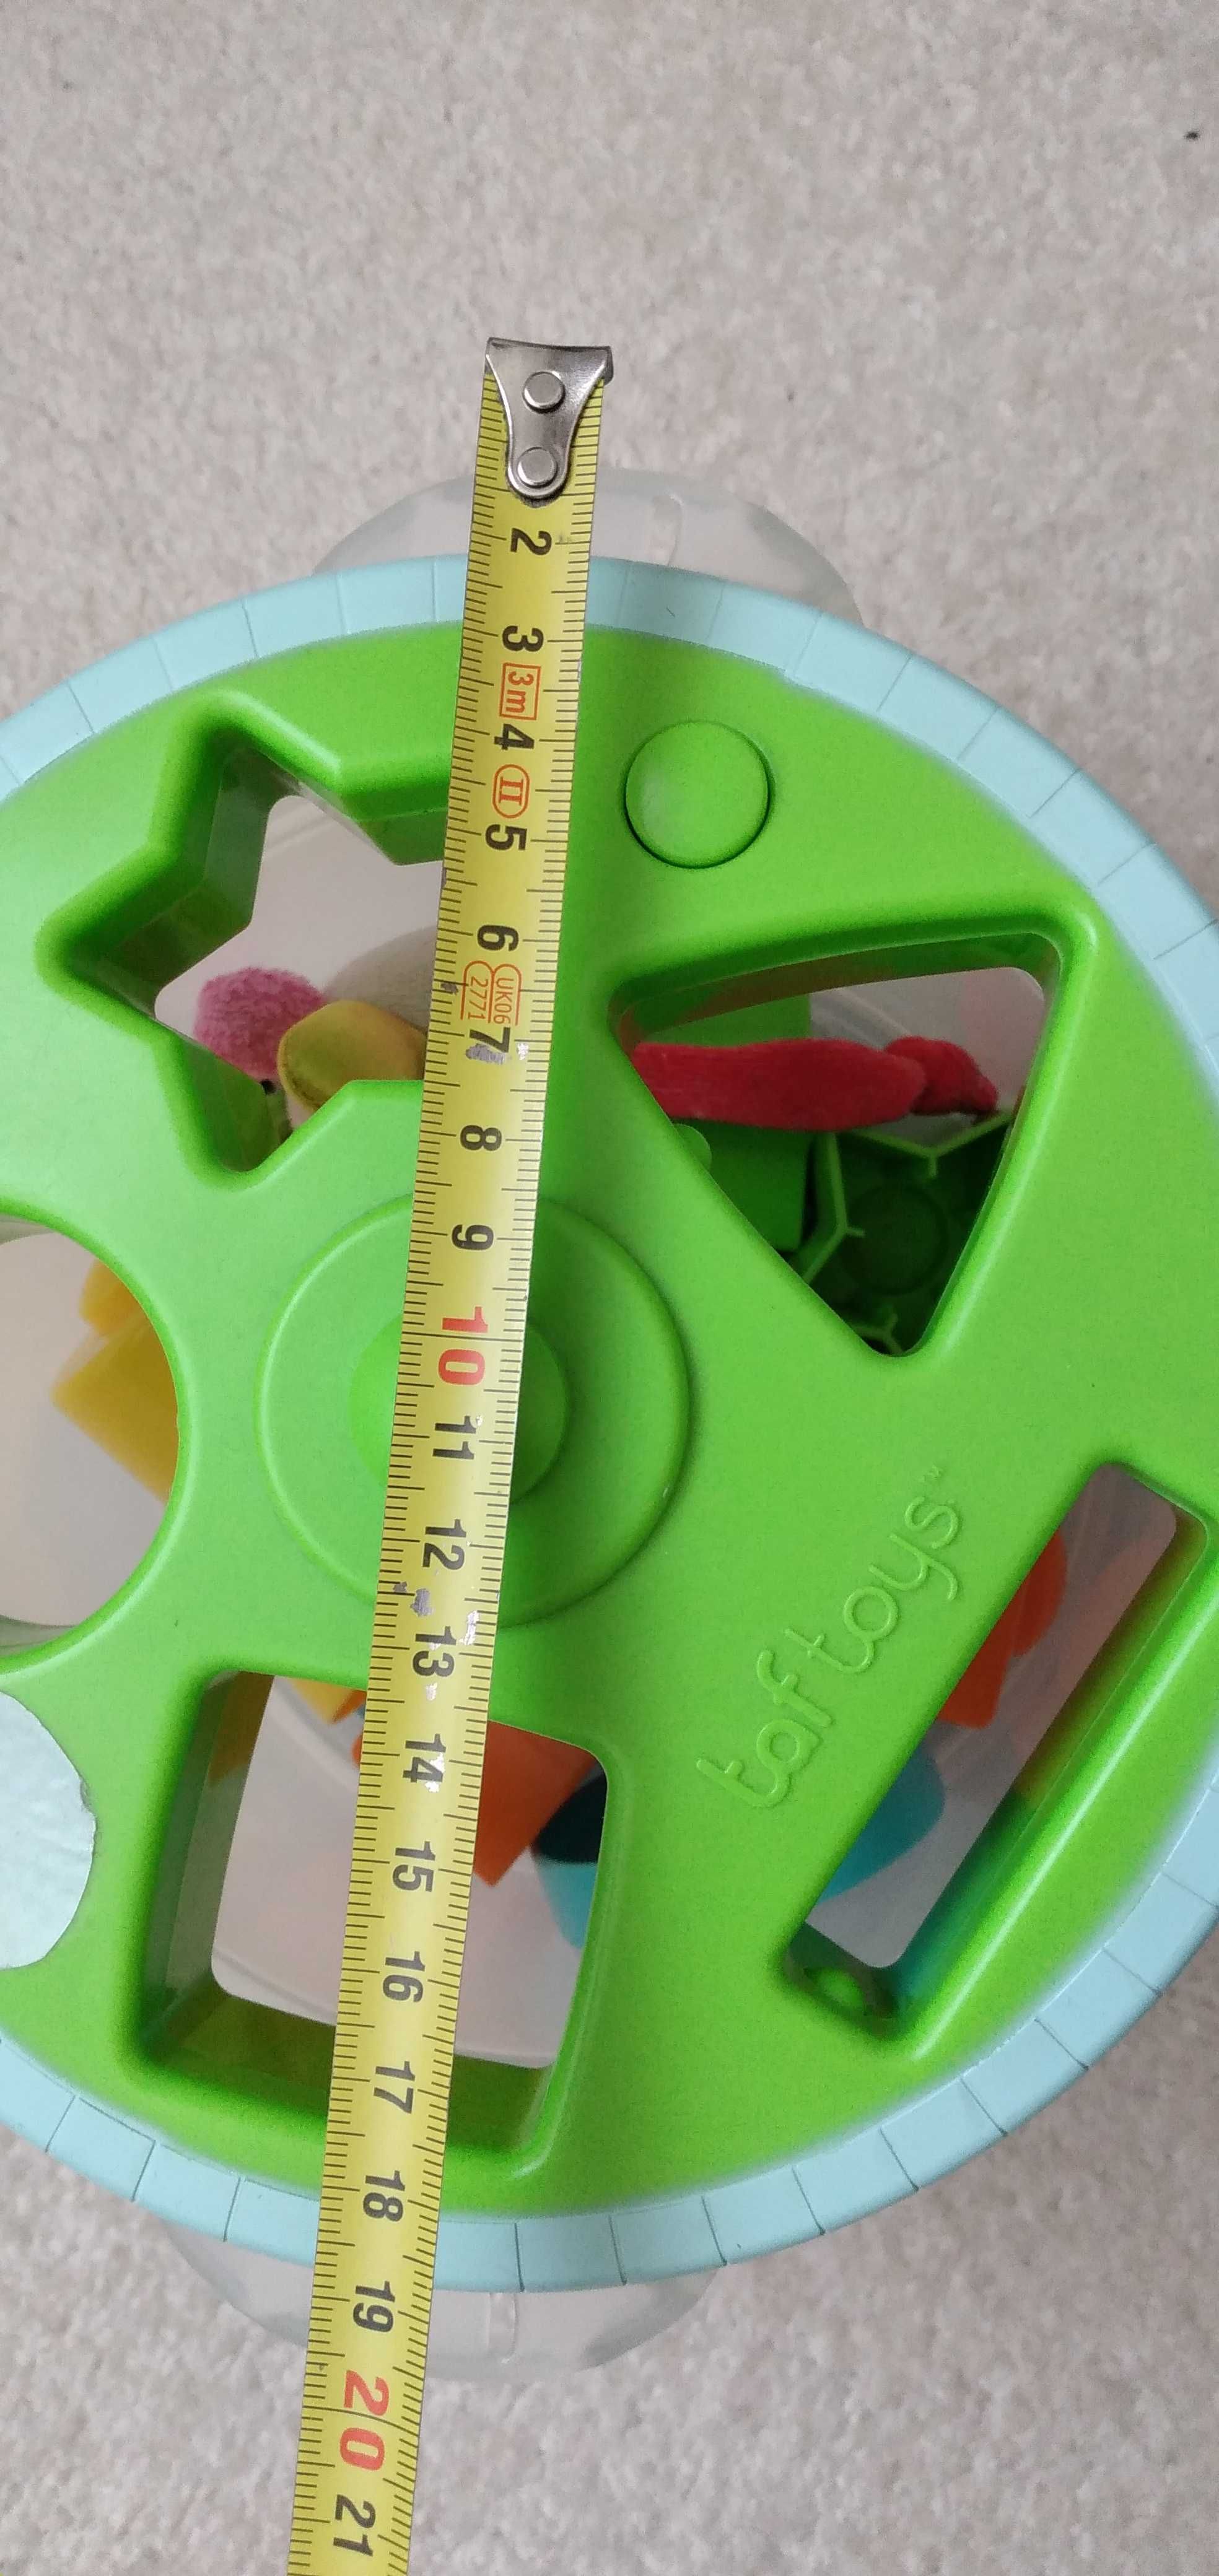 Garnek sorter wielofunkcyjny dzwiękowy z klockami, zabawka sensoryczna